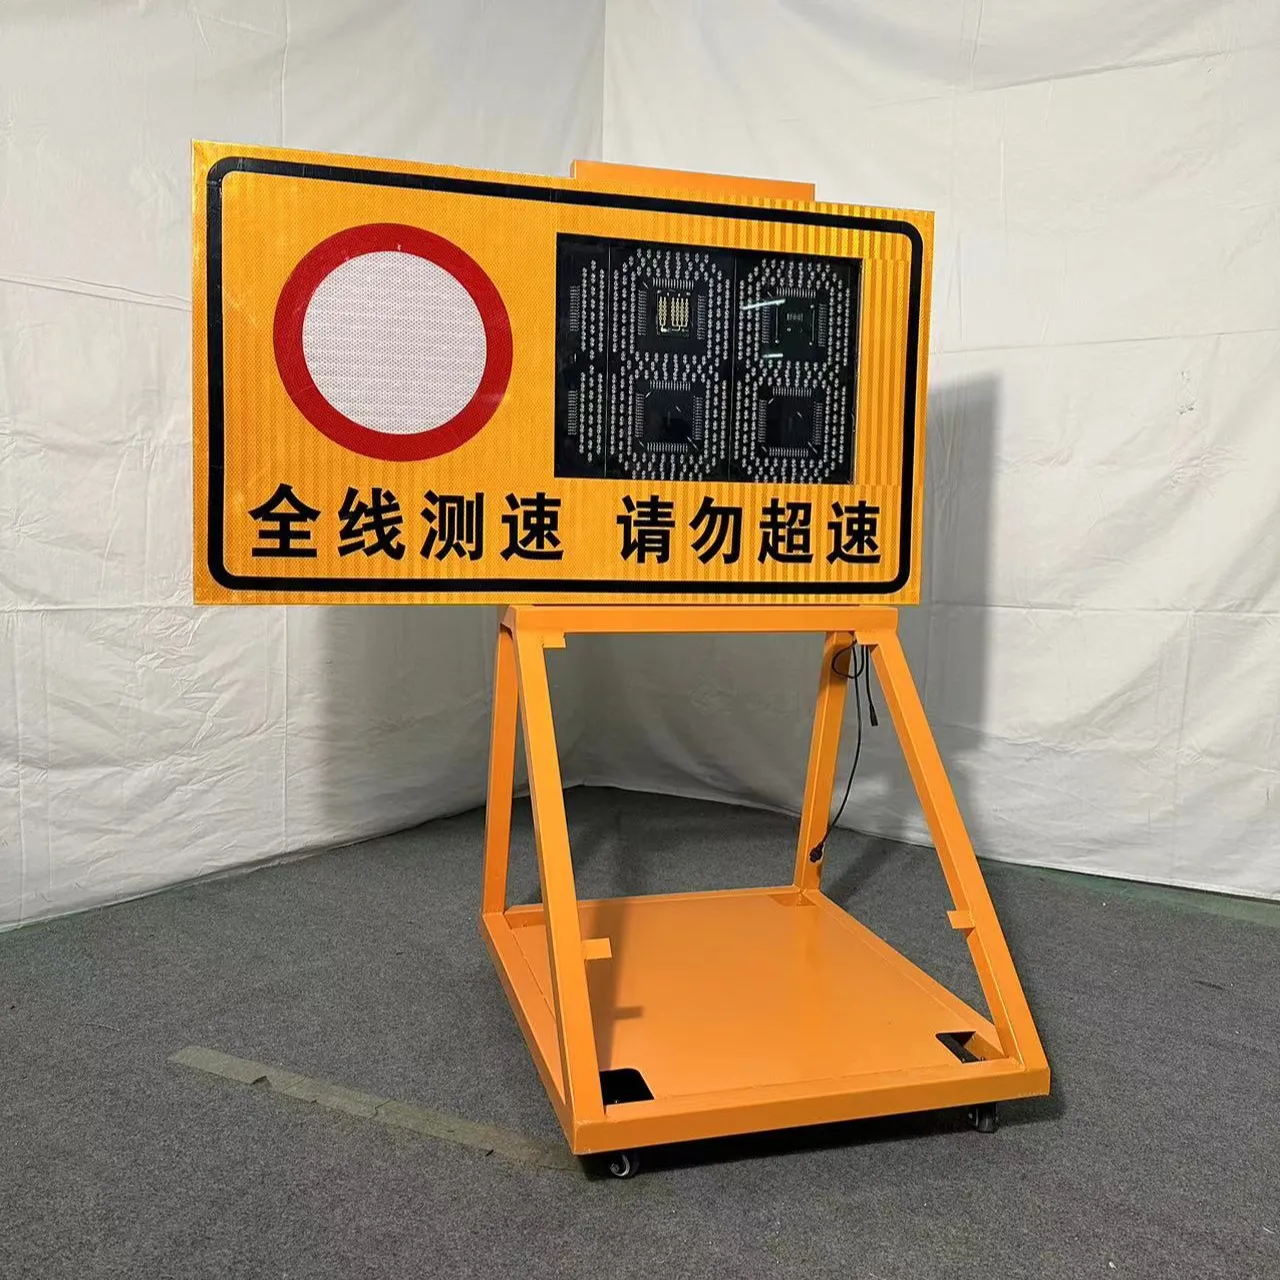 Radar tabanlı değişken mesajlaşma karayolu hızı uyarı işareti güneş trafik sınırı hız işareti karayolu güvenlik işaretleri alüminyum Xintong